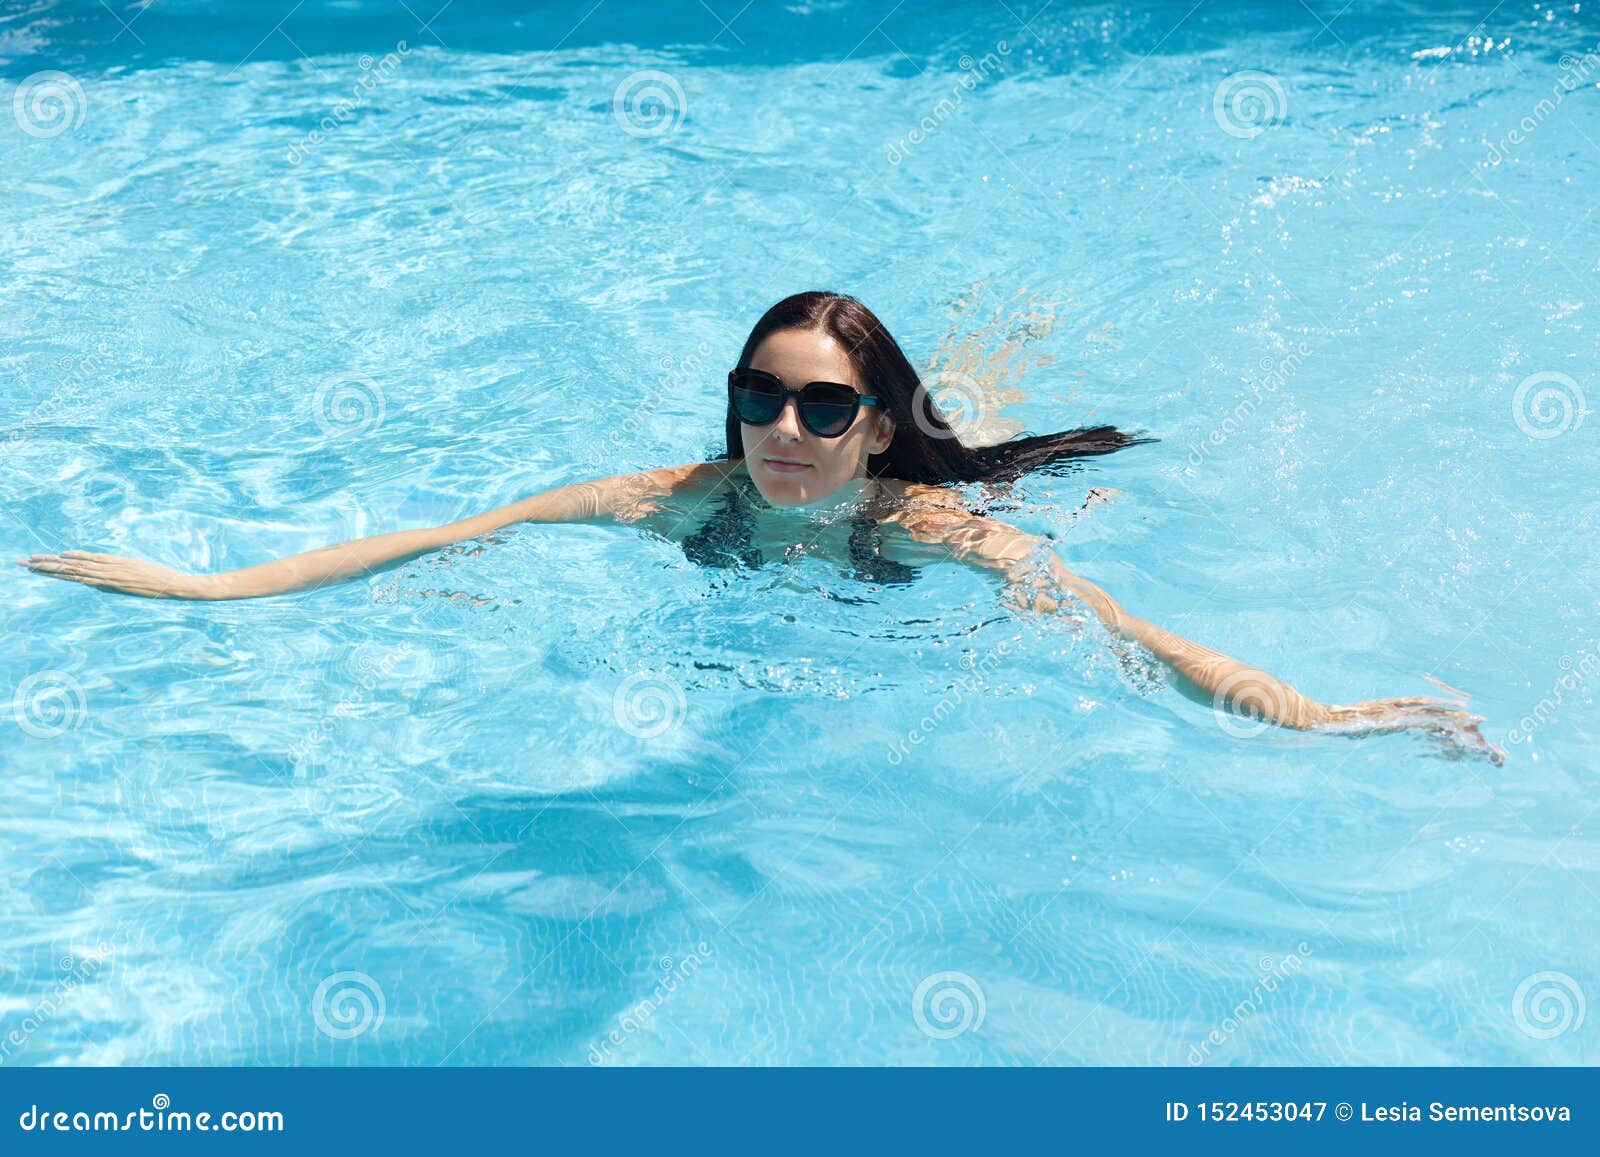 Голые женщины плавают в бассейне (47 фото)